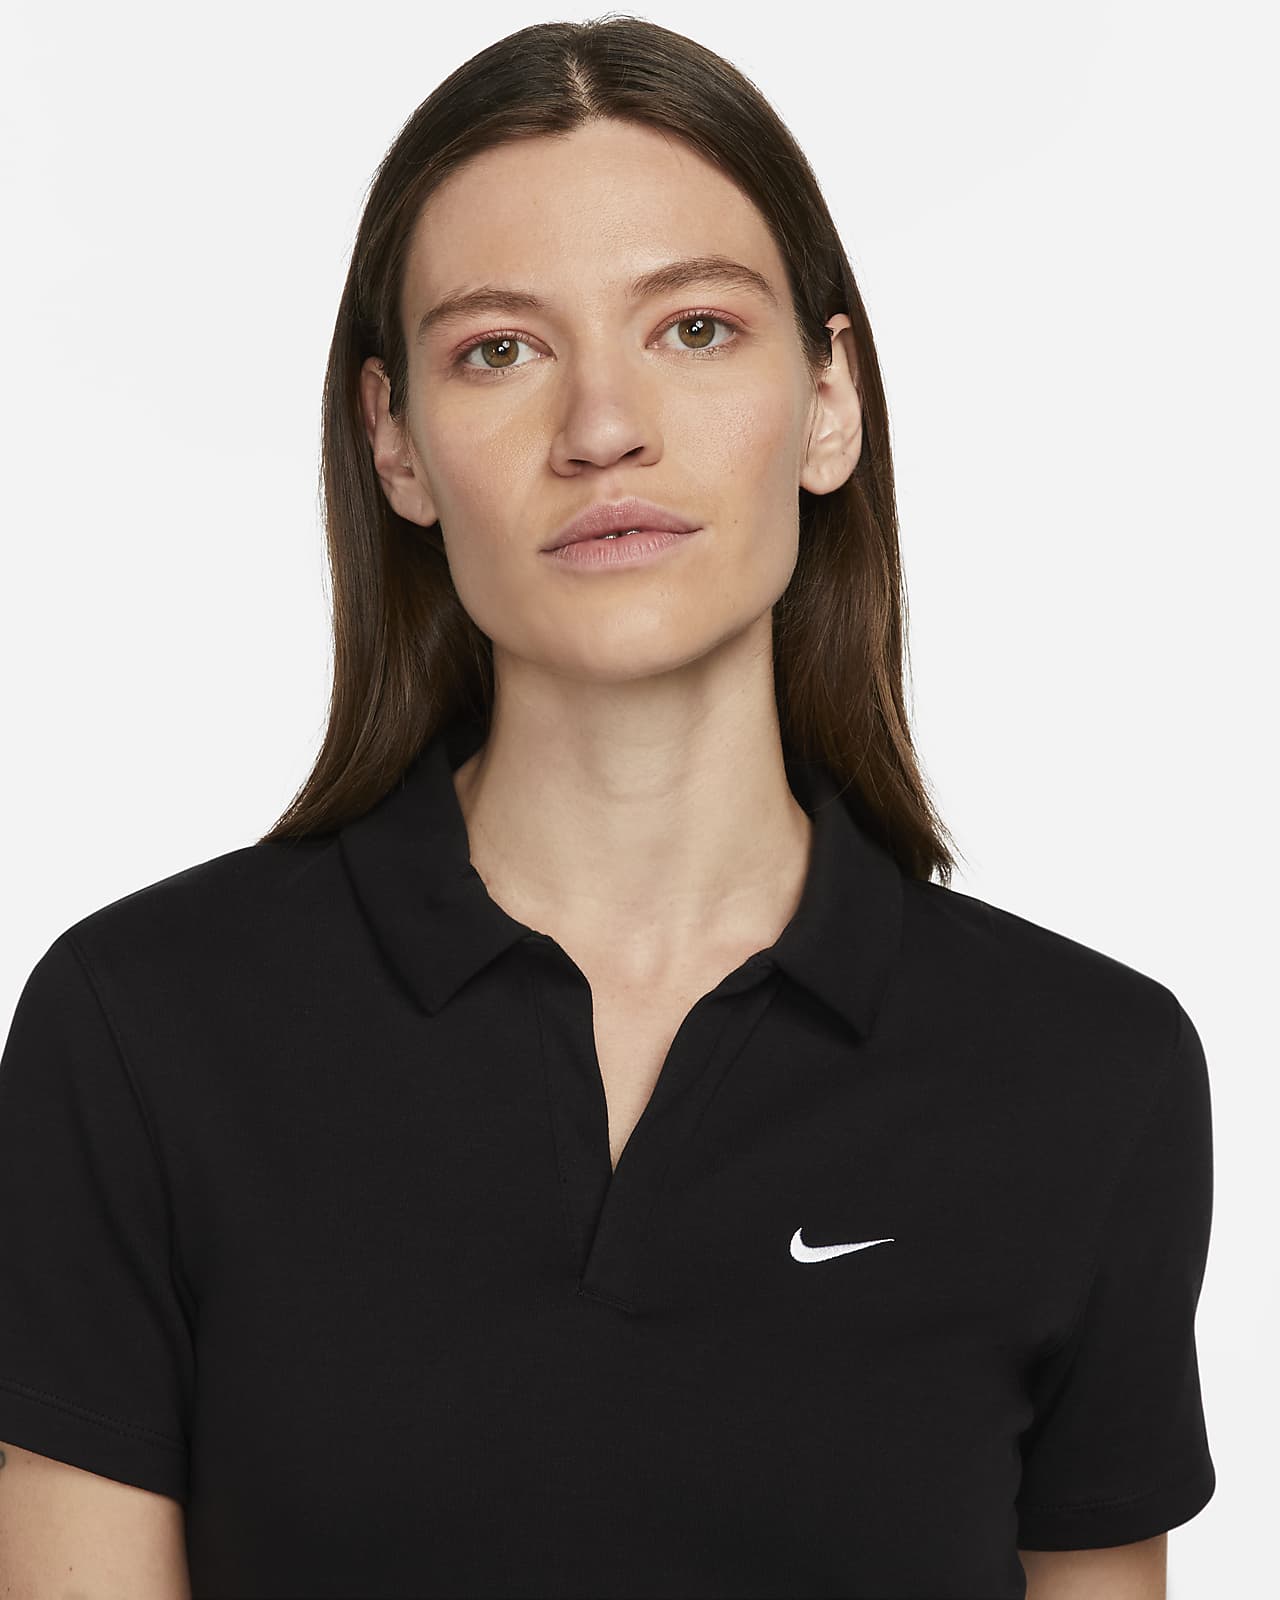 Women's Golf Cotton Polo Shirt Zipper Short Sleeves Slim Fit